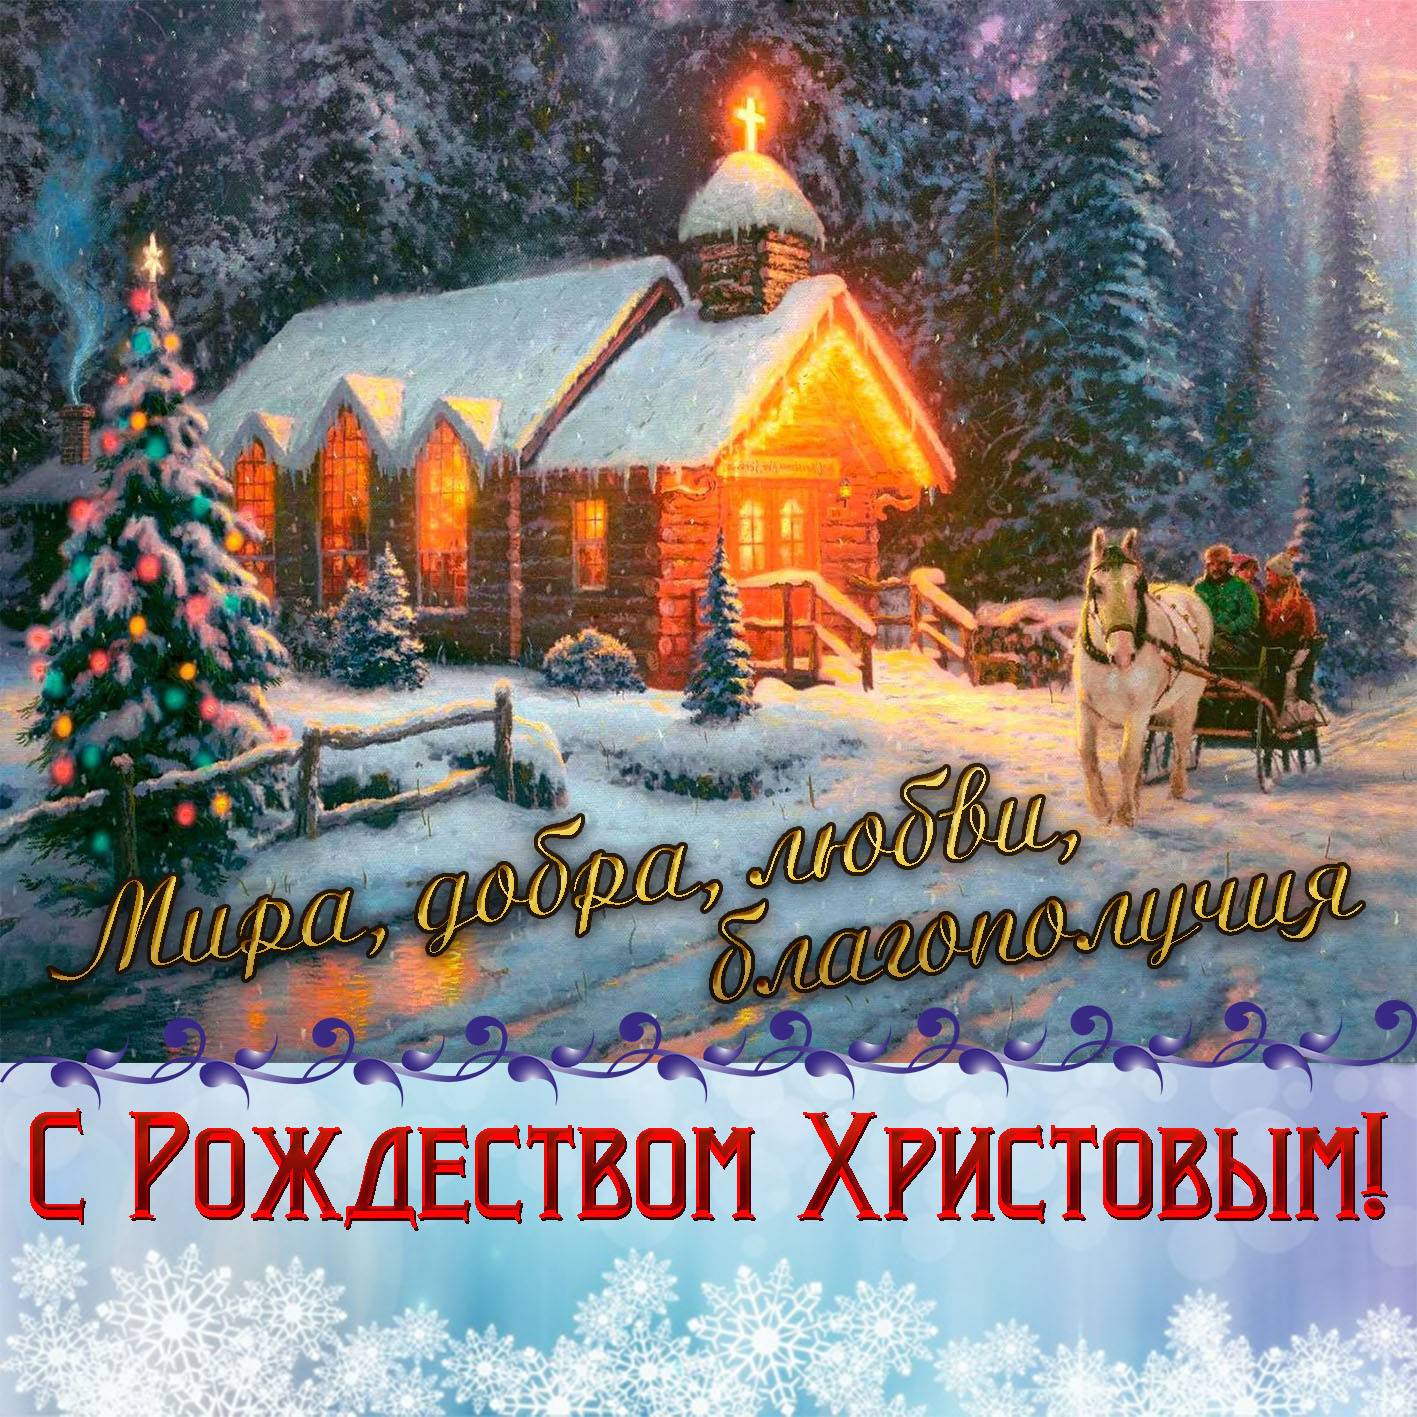 История праздника рождество христово — традиции и обычаи православного рождества